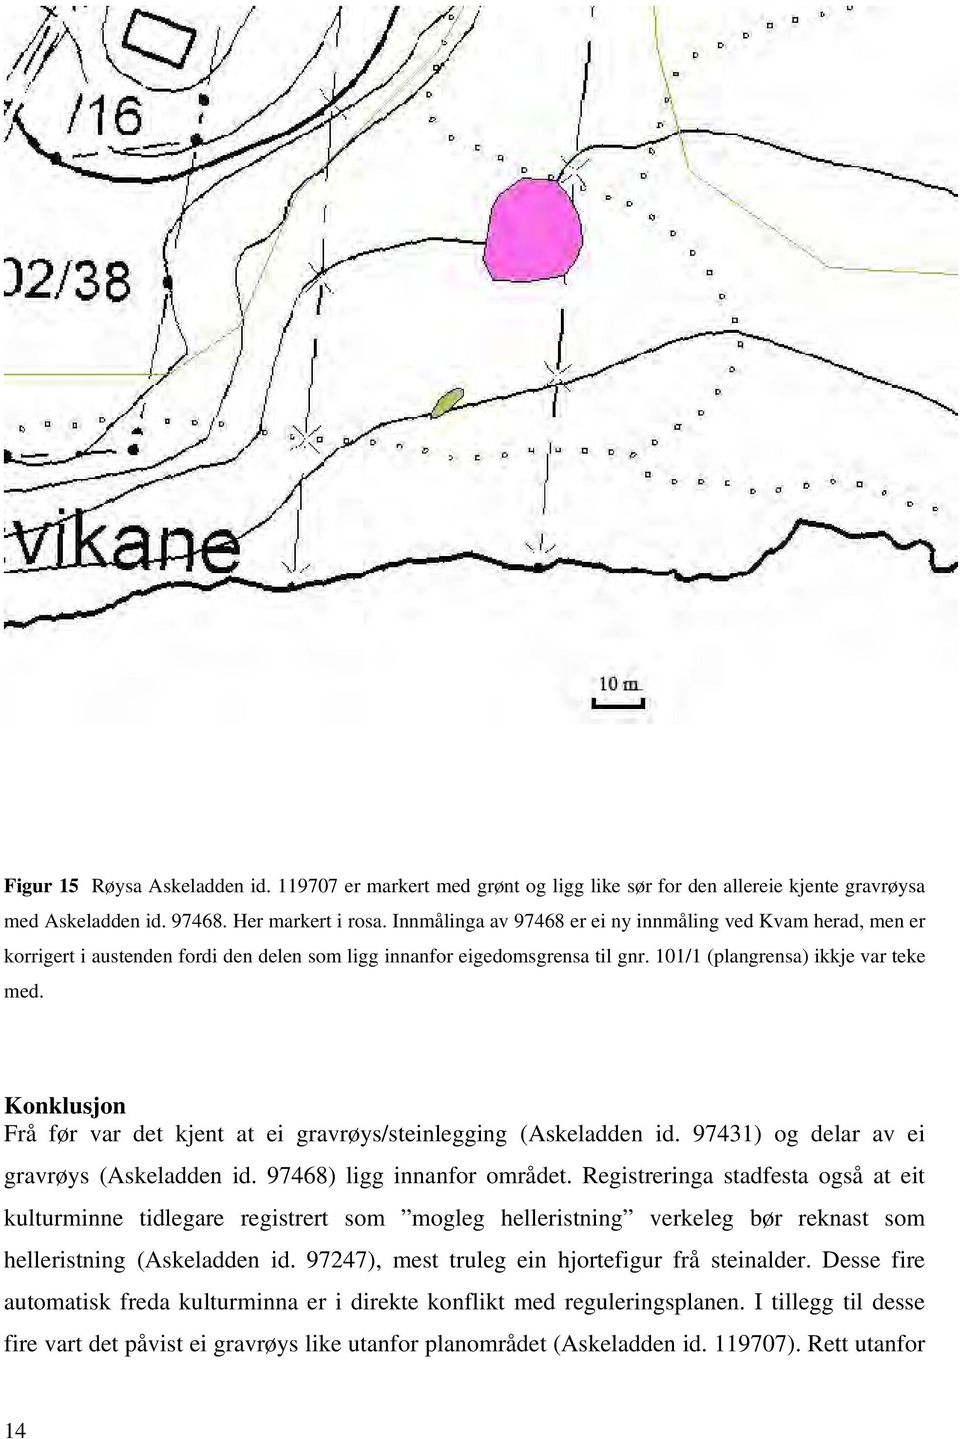 Konklusjon Frå før var det kjent at ei gravrøys/steinlegging (Askeladden id. 97431) og delar av ei gravrøys (Askeladden id. 97468) ligg innanfor området.